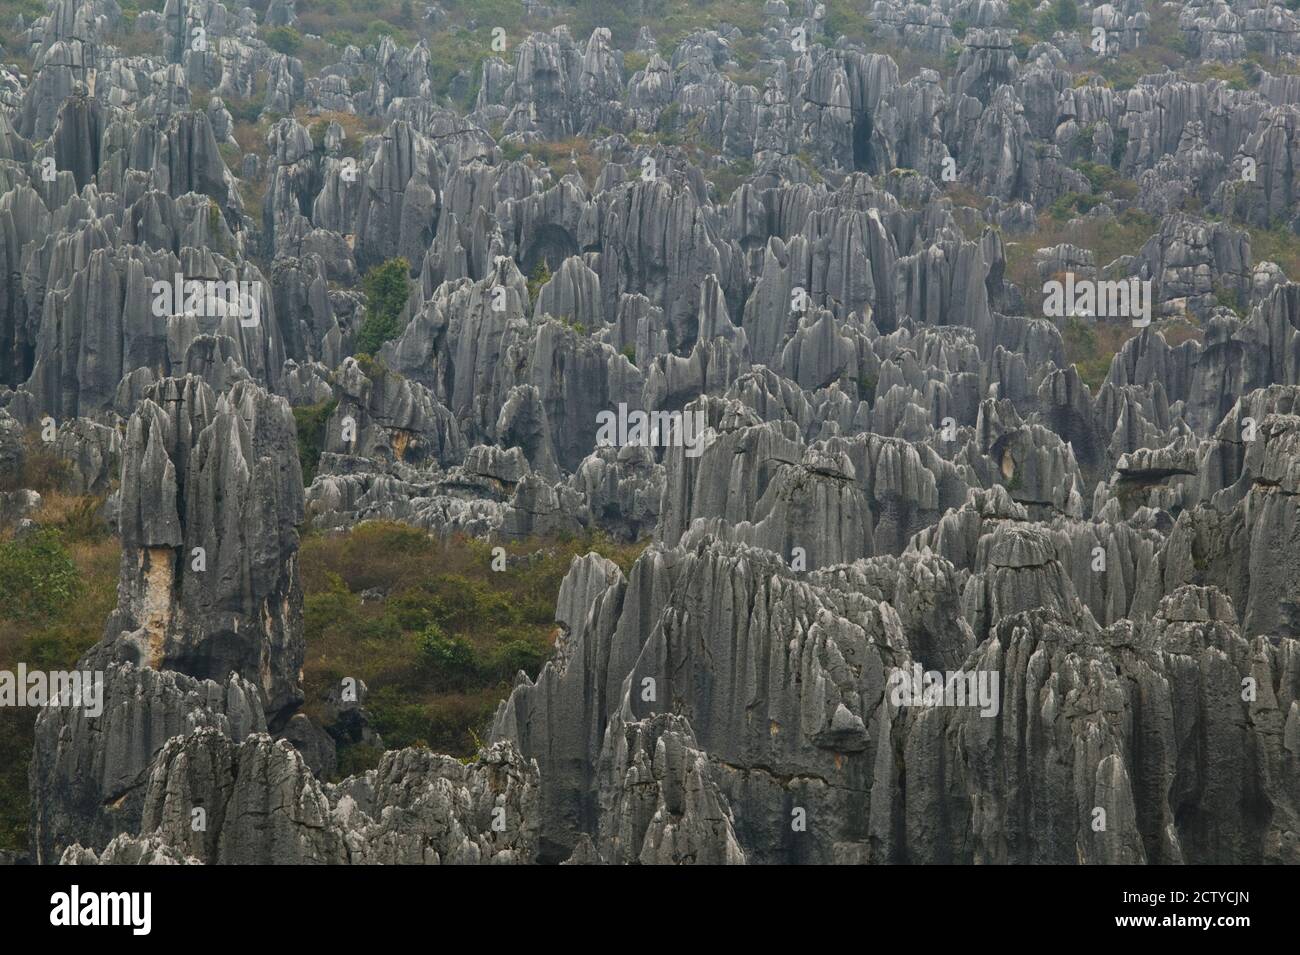 Formaciones de piedra caliza, el Bosque de Piedra, Shilin, Kunming, Provincia de Yunnan, China Foto de stock